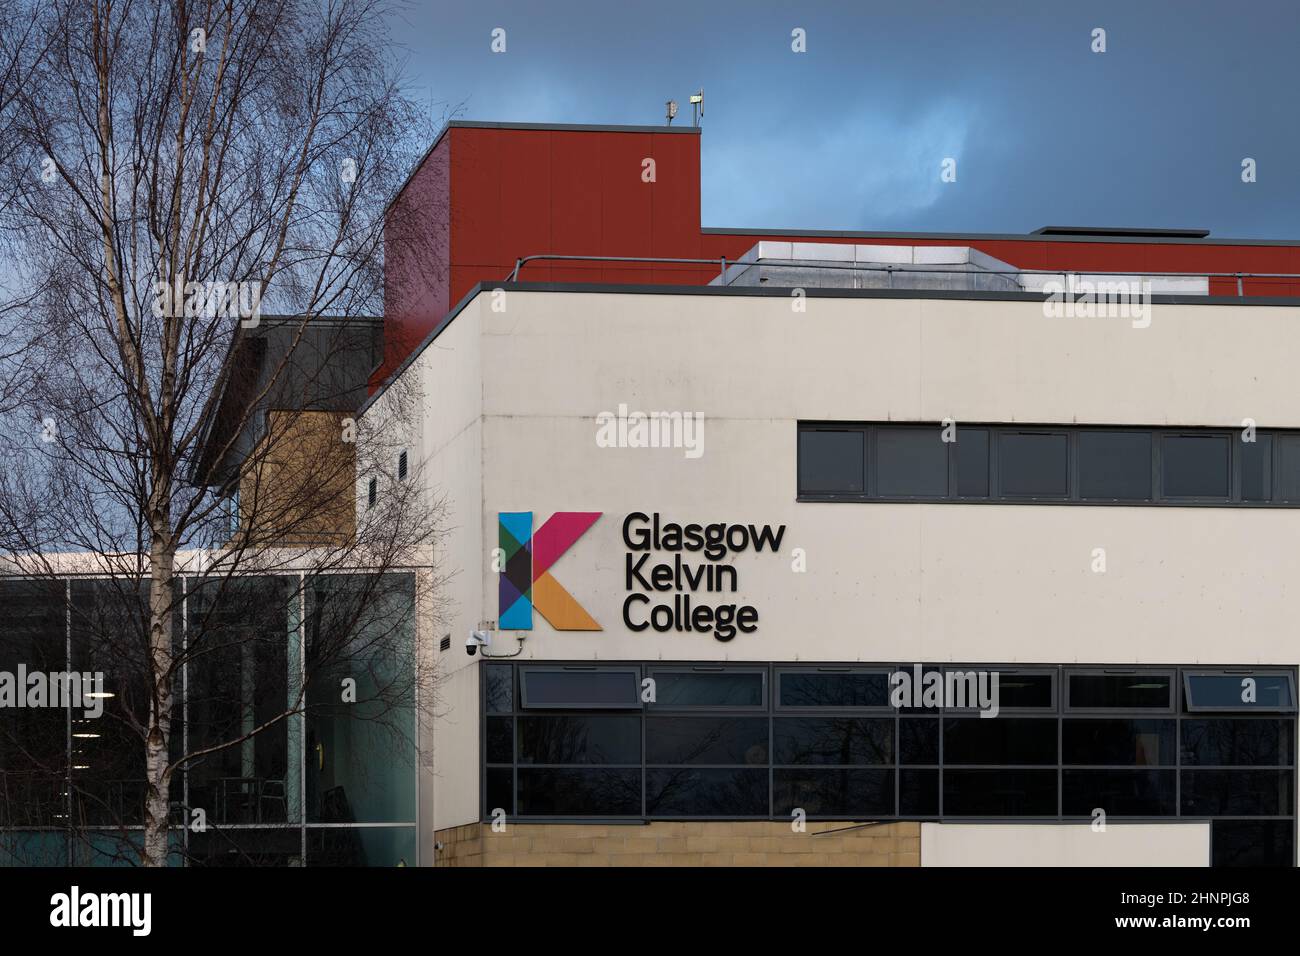 Glasgow Kelvin College, Easterhouse campus, Glasgow, Scotland, UK Stock Photo